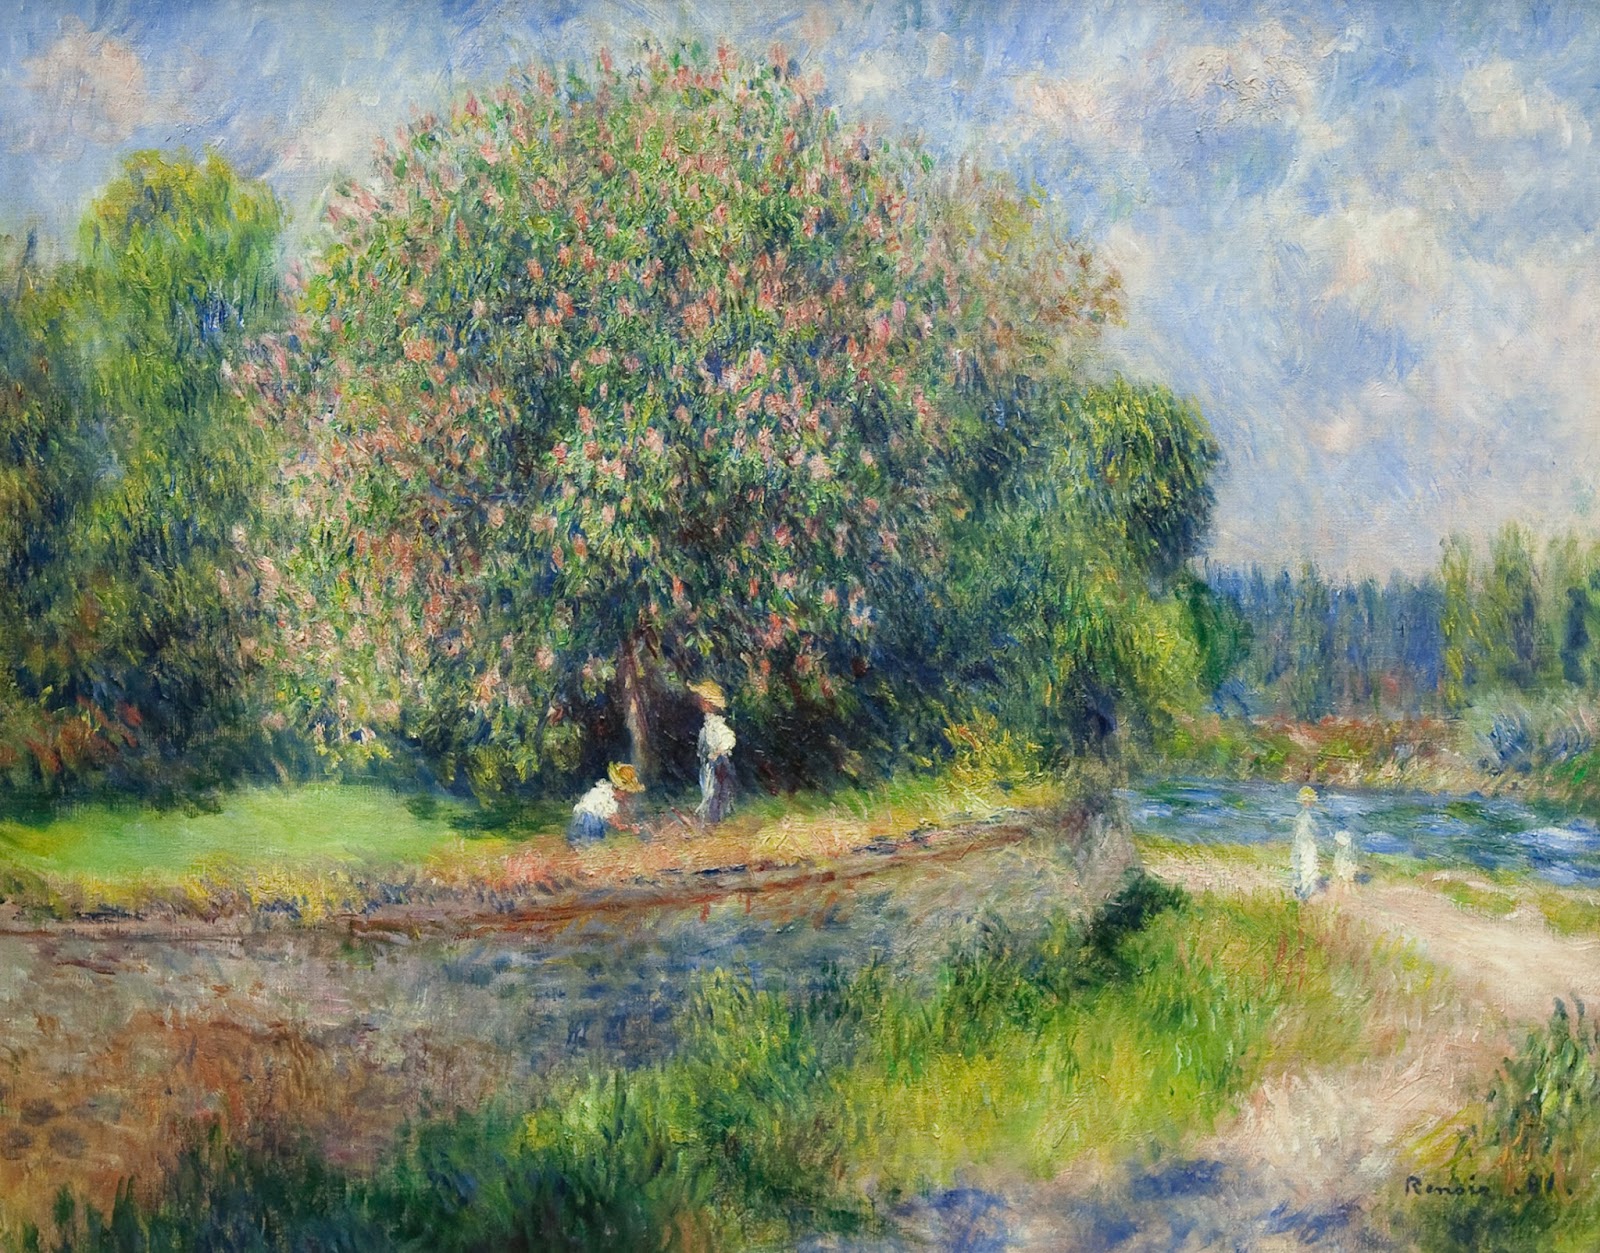 Pierre+Auguste+Renoir-1841-1-19 (471).jpg